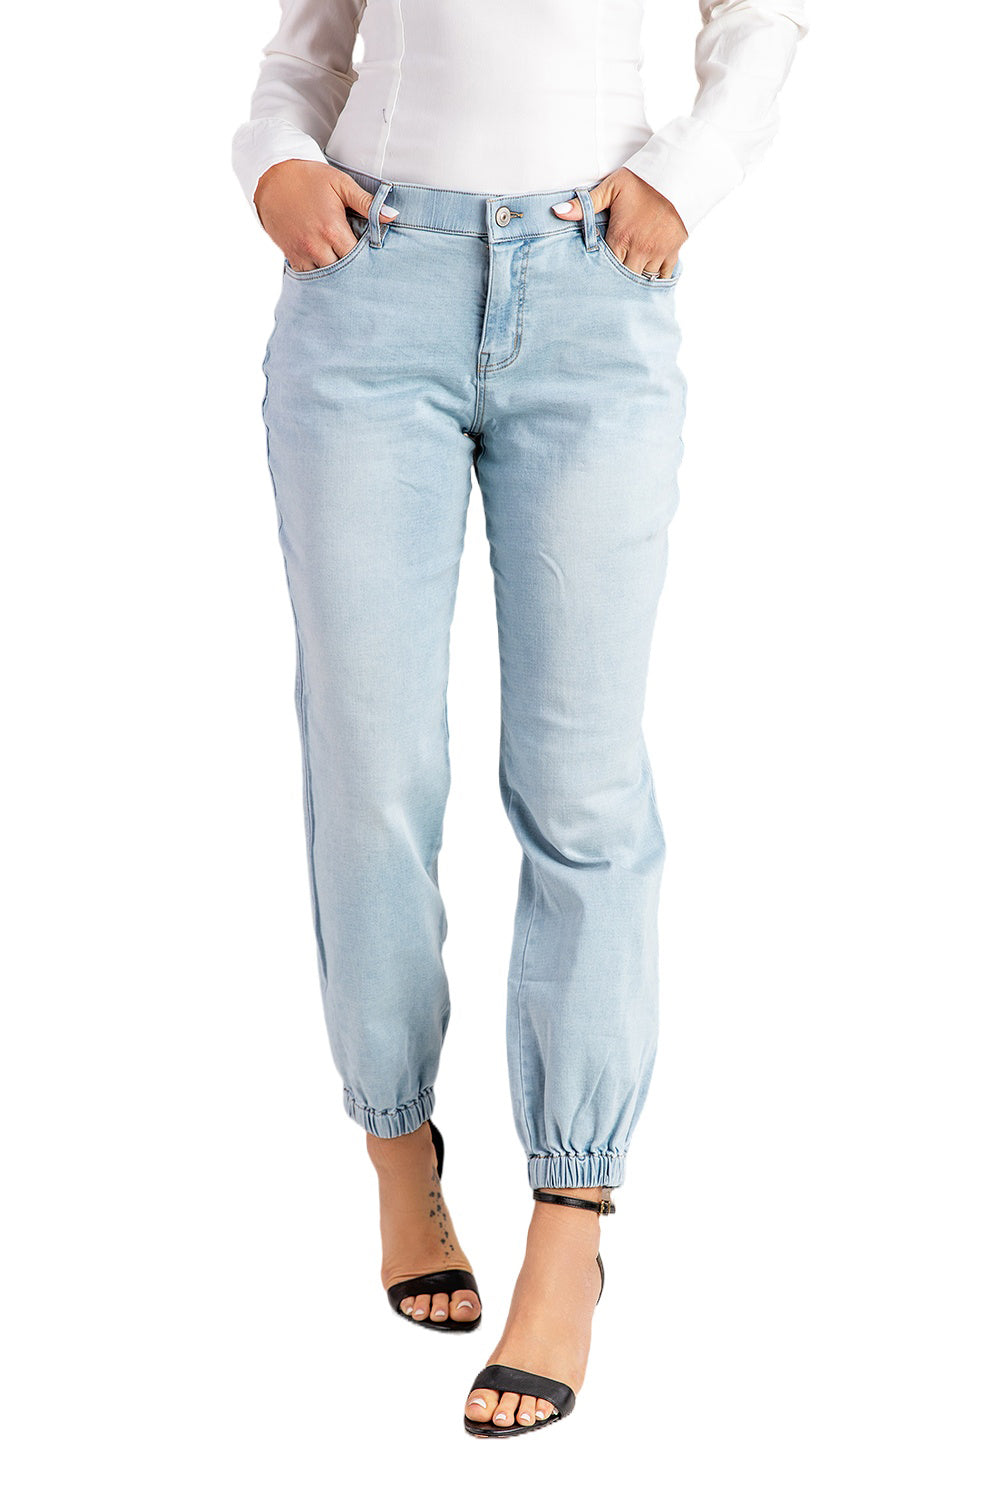 Sky Blue Acid Wash Jogger Jeans Jeans JT's Designer Fashion